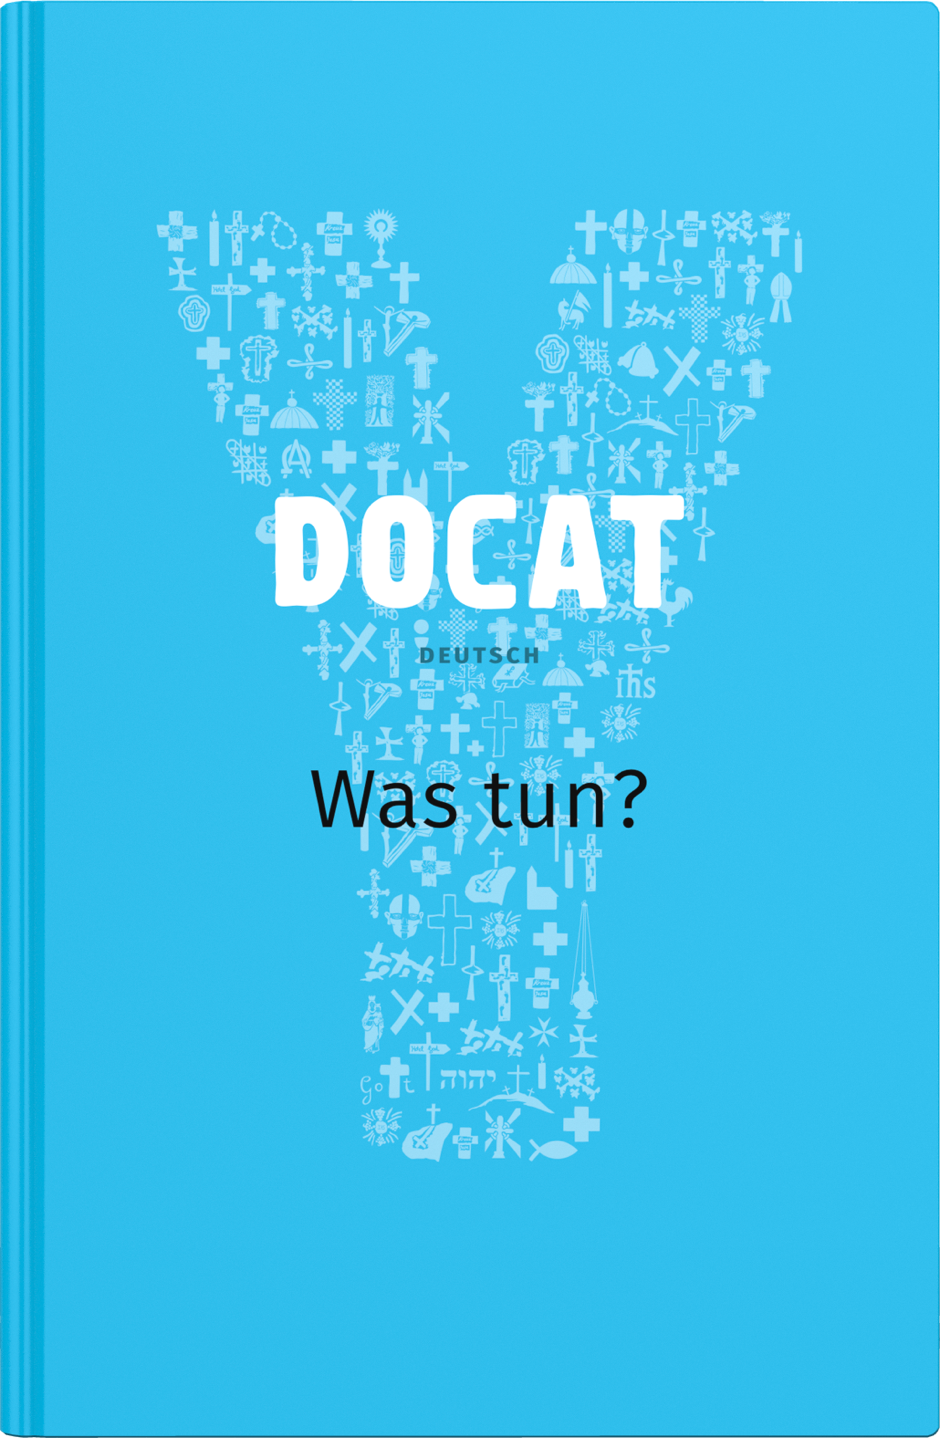 DOCAT steht für To Do (tun) und Cat (Catechism), also einer Anleitung zur Haltung des Christen zu den Dingen der Welt. Themen sind Arbeit, Freiheit, Gemeinschaft und die Schöpfung.